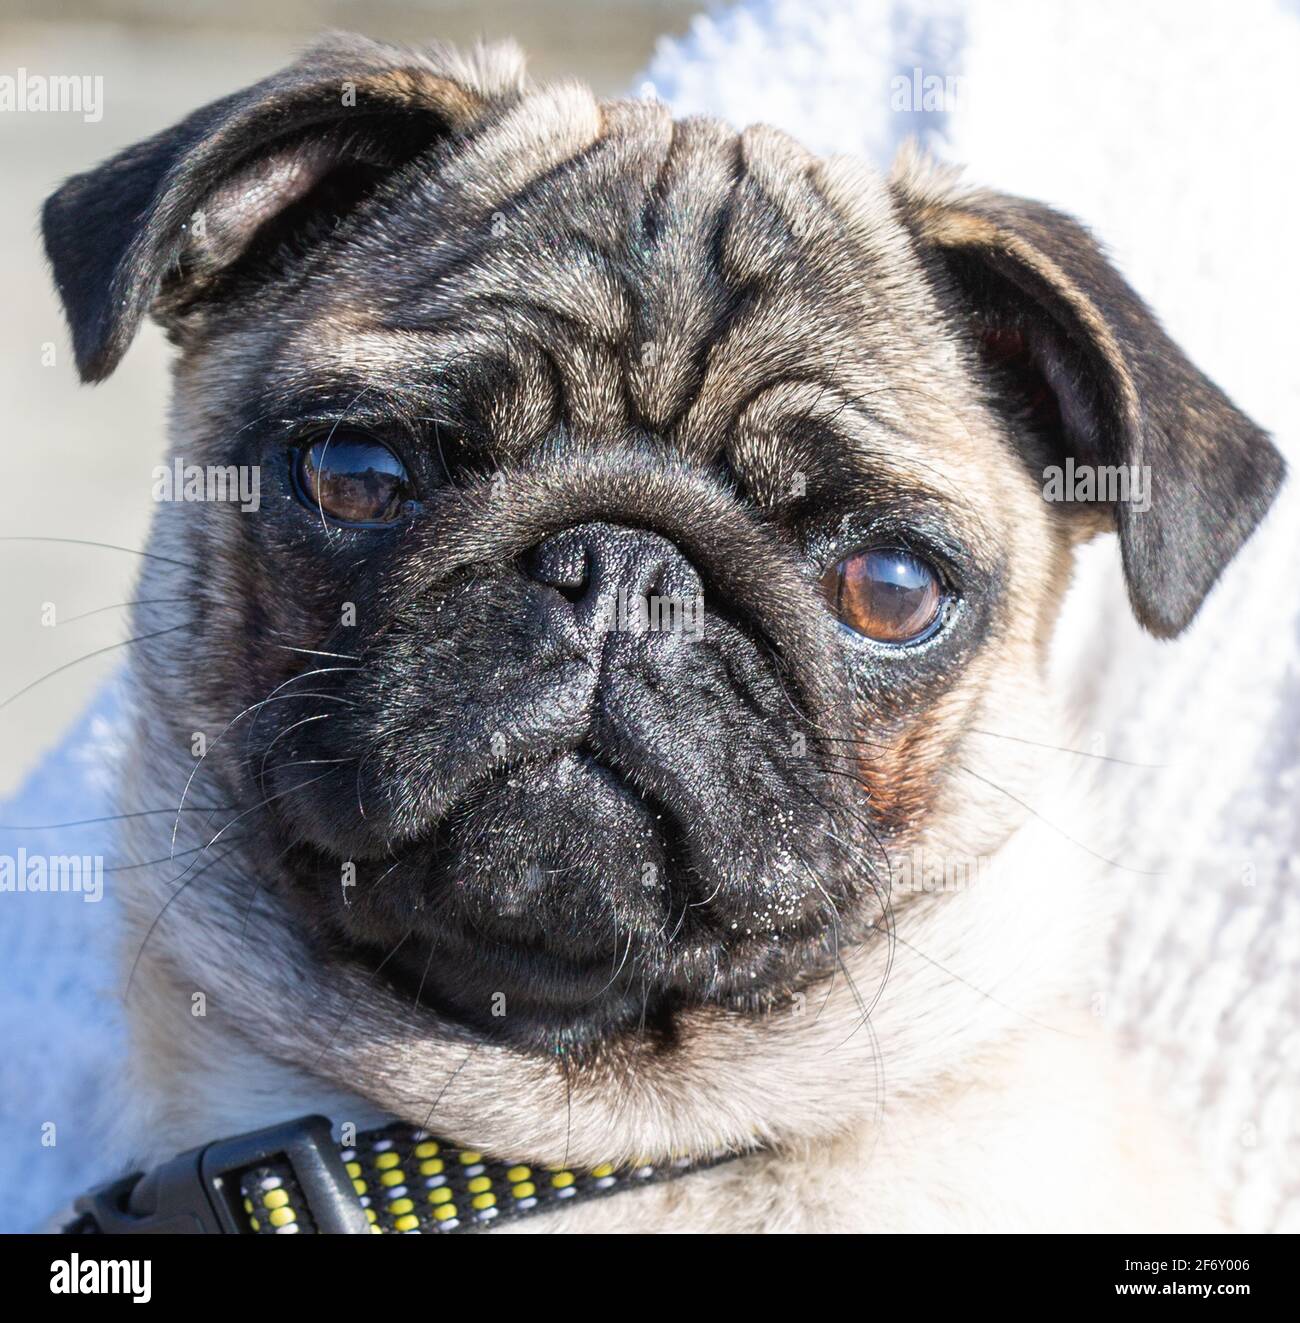 Pug close up facing camera Stock Photo